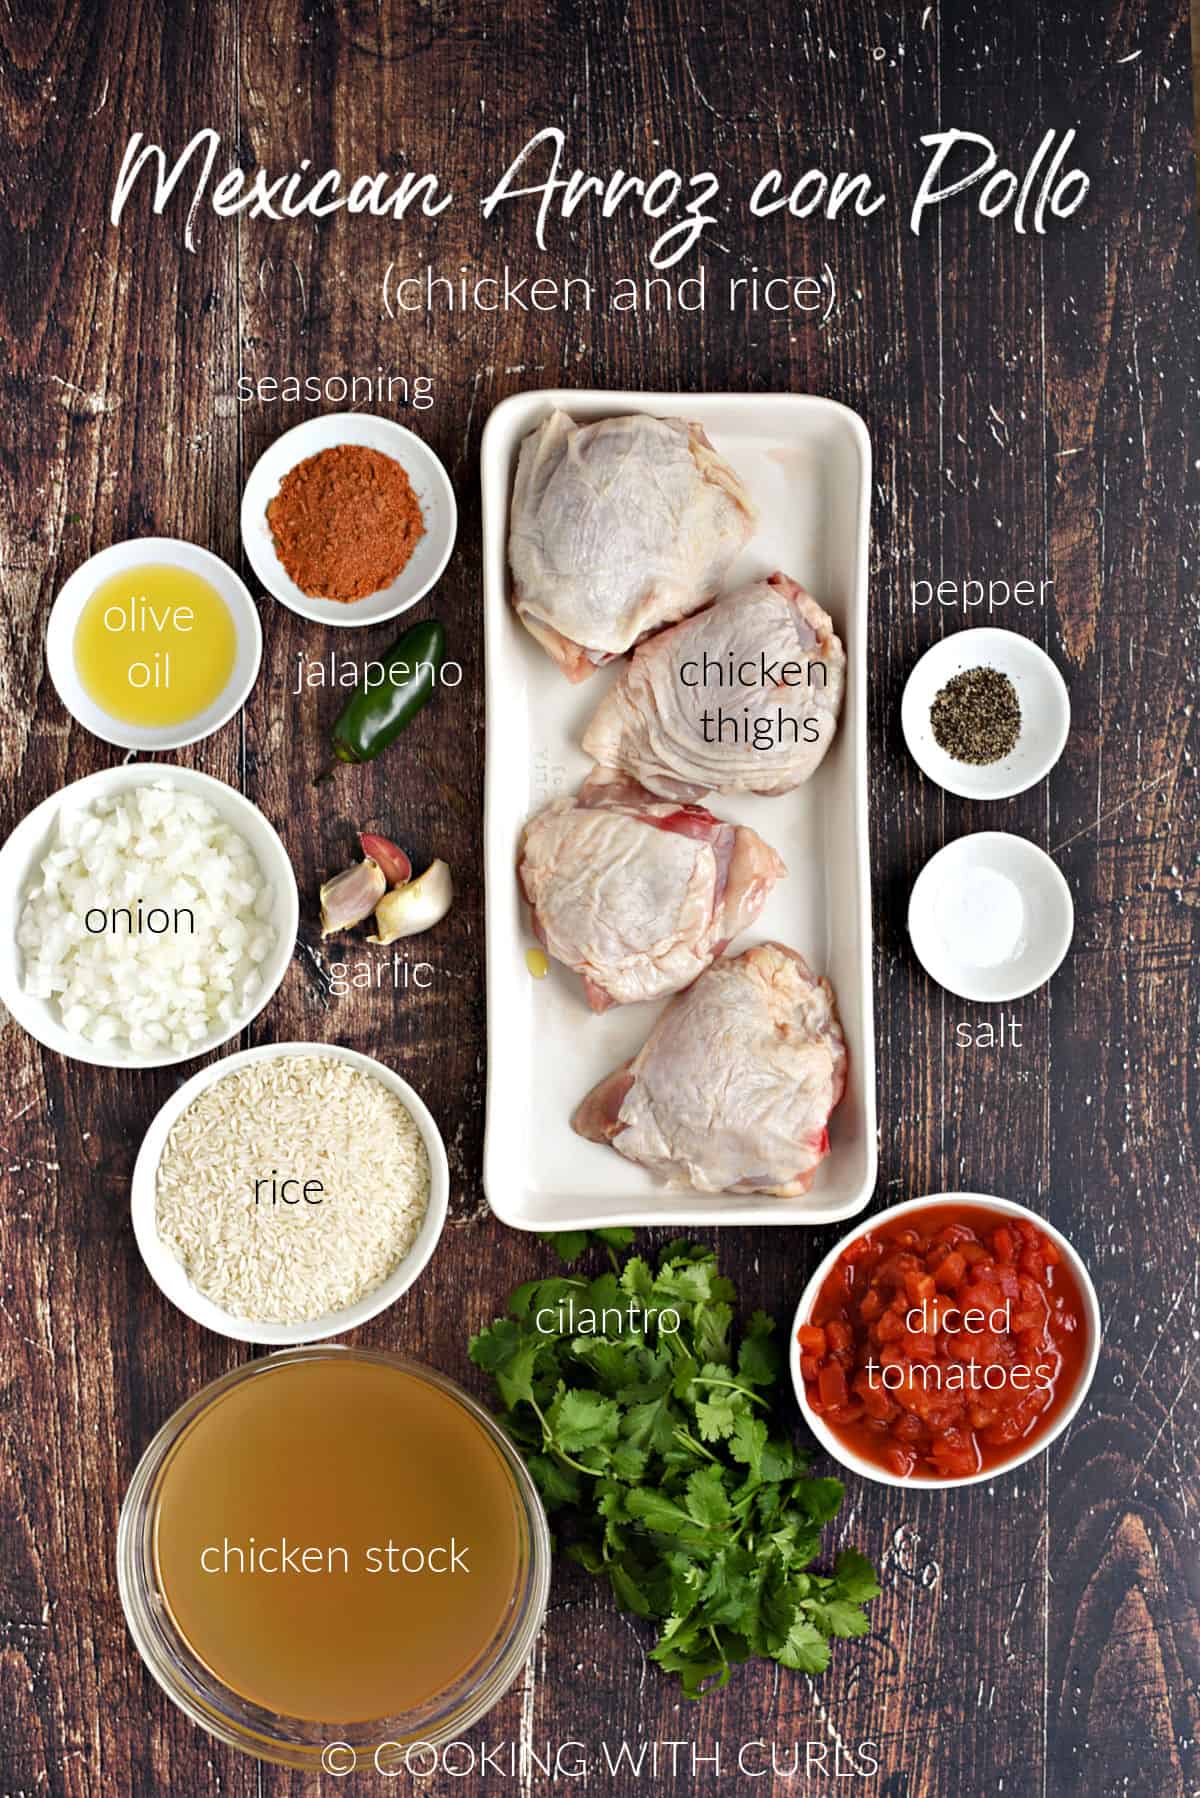 Ingredients to make Mexican Arroz con Pollo.